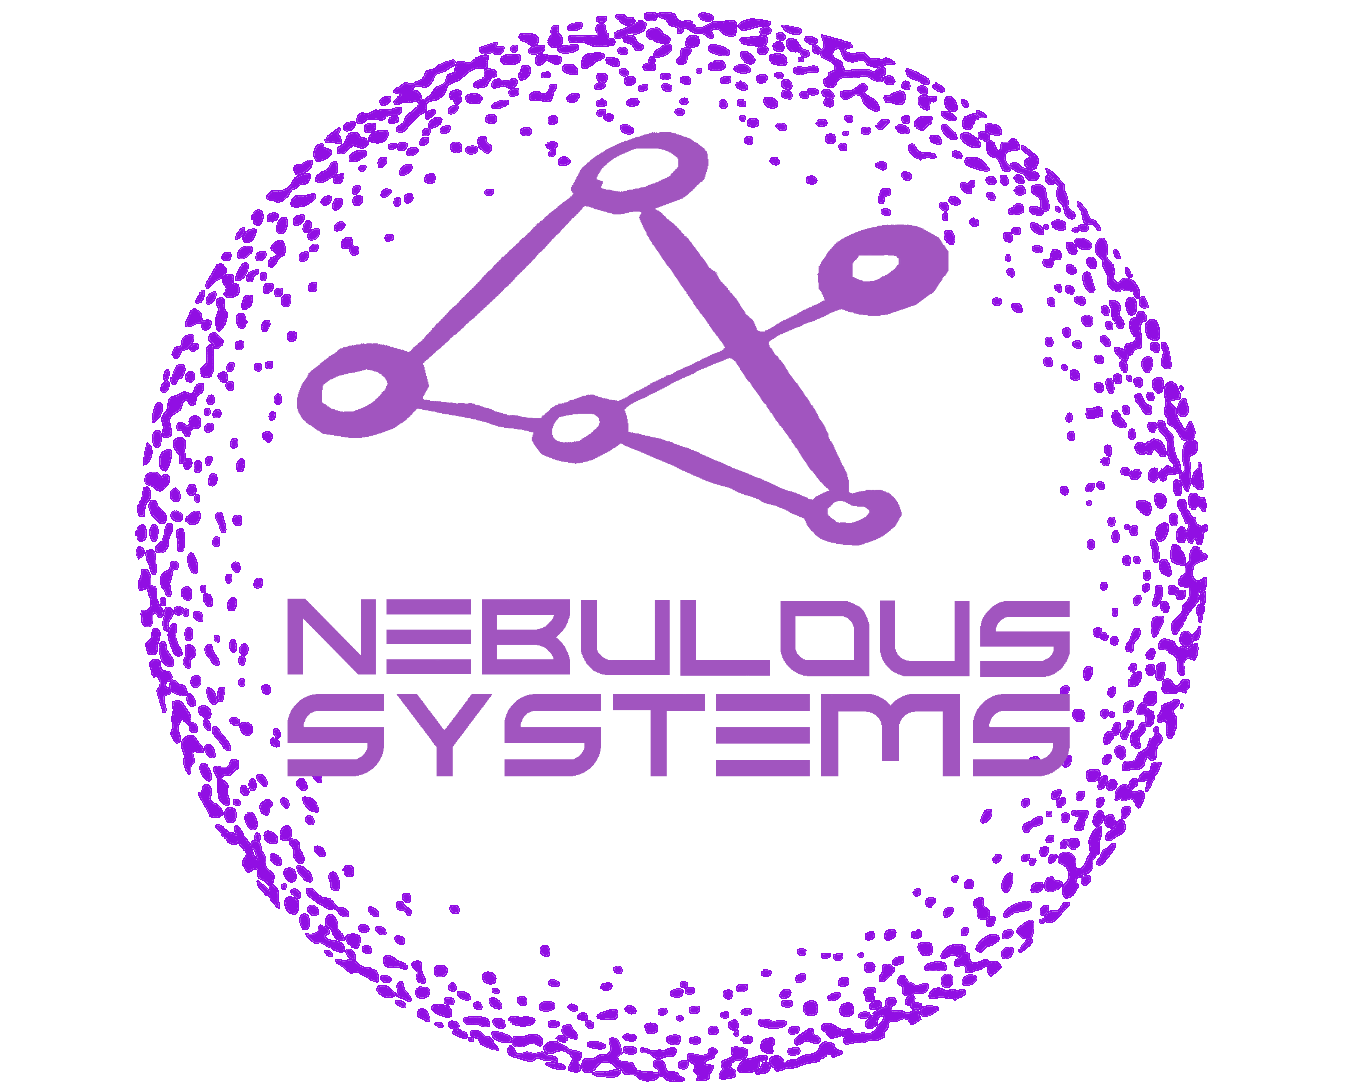 Nebulous Systems Logo